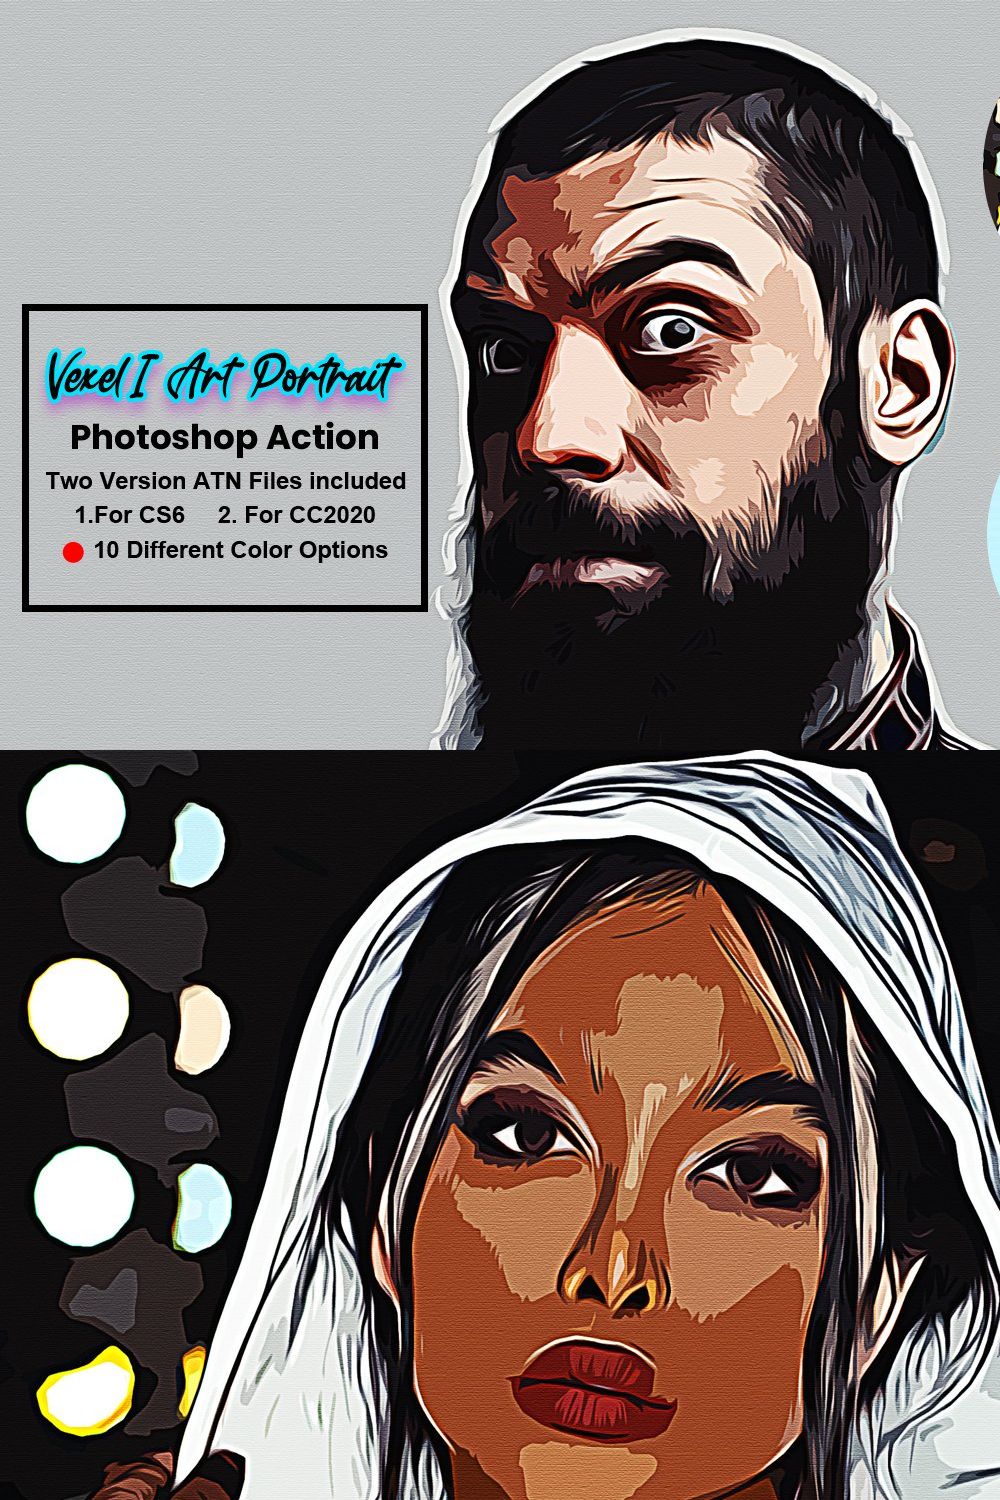 Vexel Art Portrait Photoshop Action pinterest preview image.